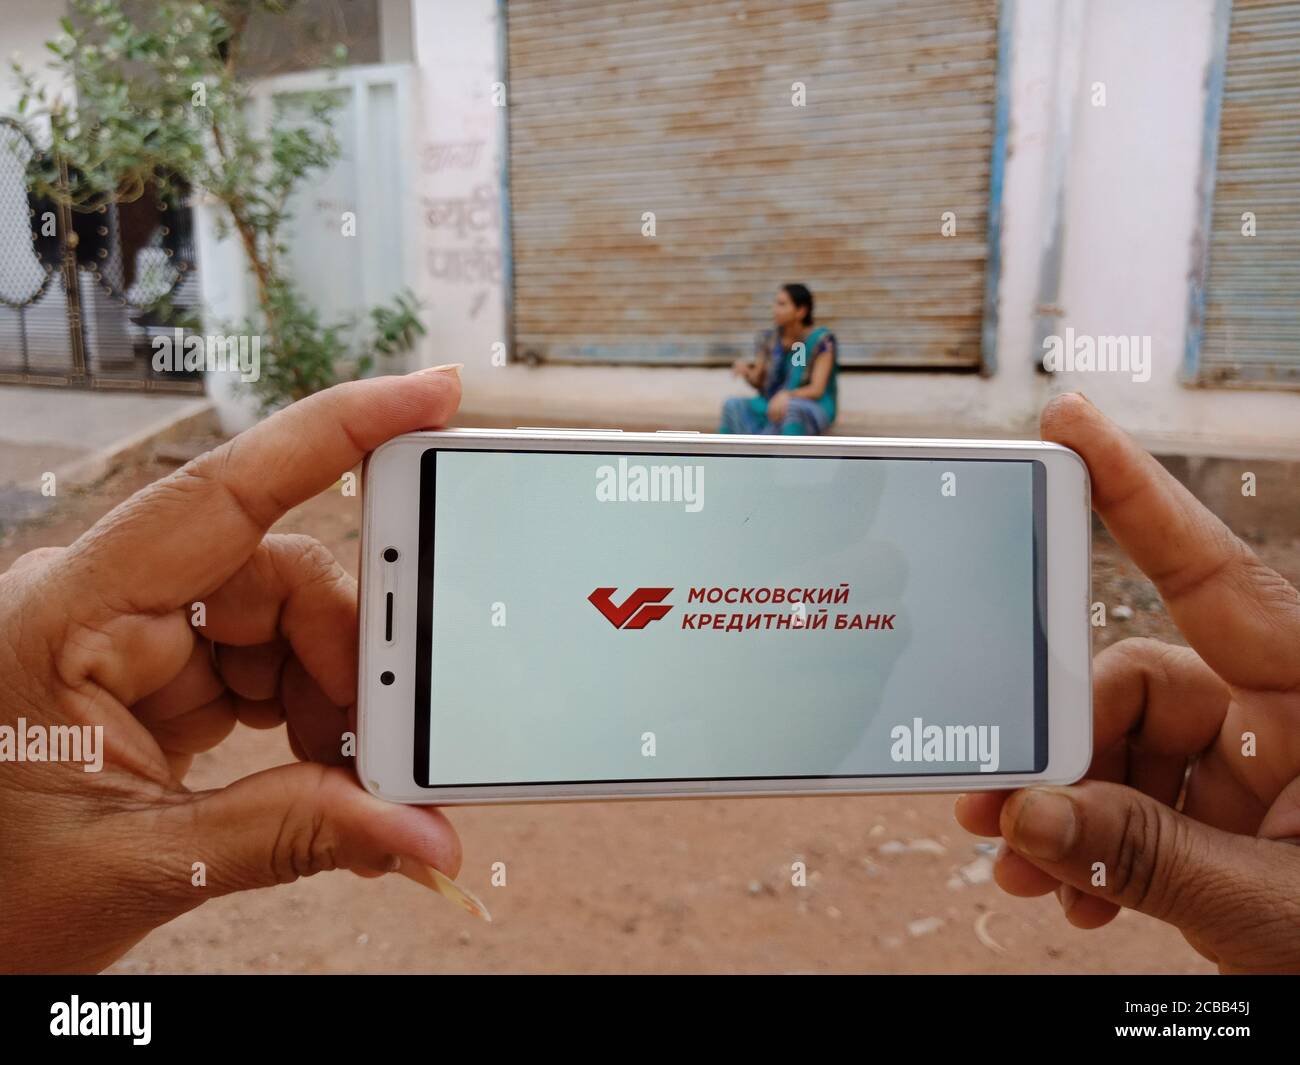 DISTRETTO KATNI, INDIA - 02 GIUGNO 2020: Una donna indiana in possesso di smartphone con visualizzazione DEL logo DELLA BANCA DI MOSCA CREDITO sullo schermo, educat bancario moderno Foto Stock